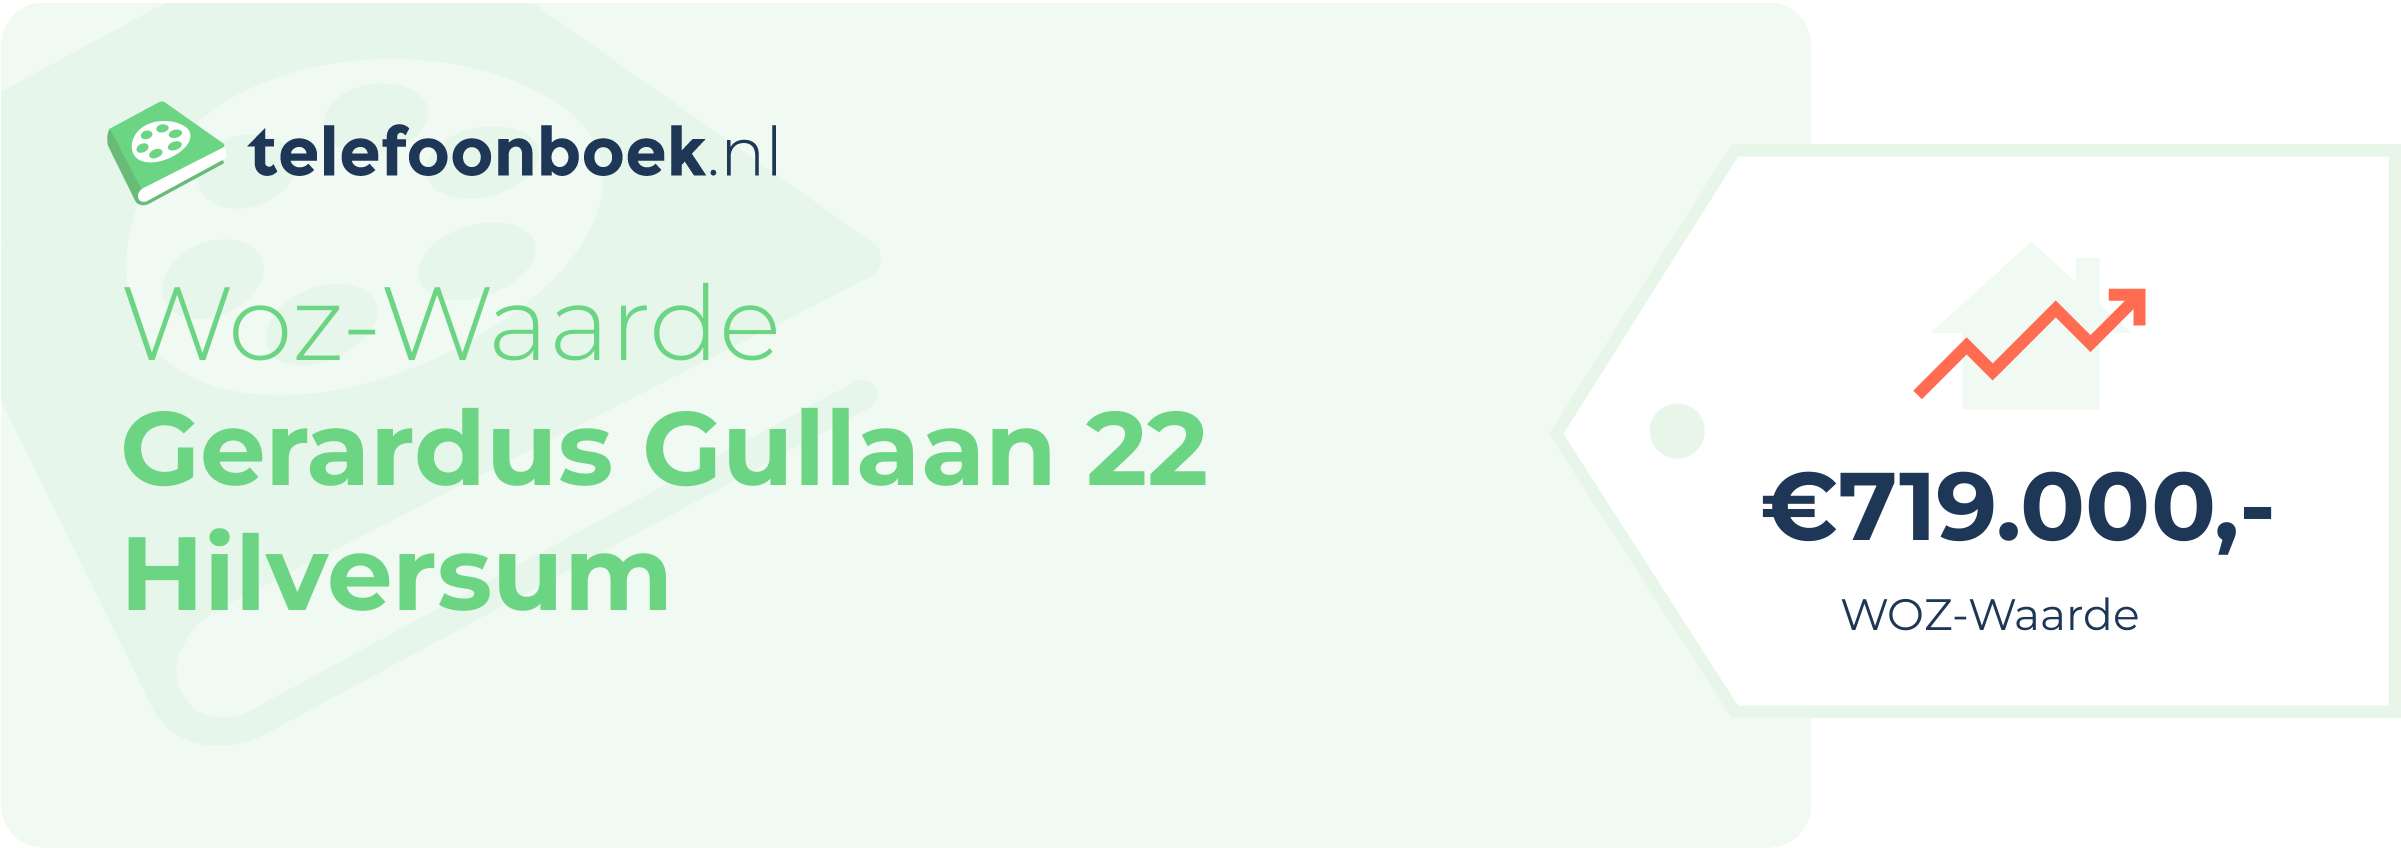 WOZ-waarde Gerardus Gullaan 22 Hilversum